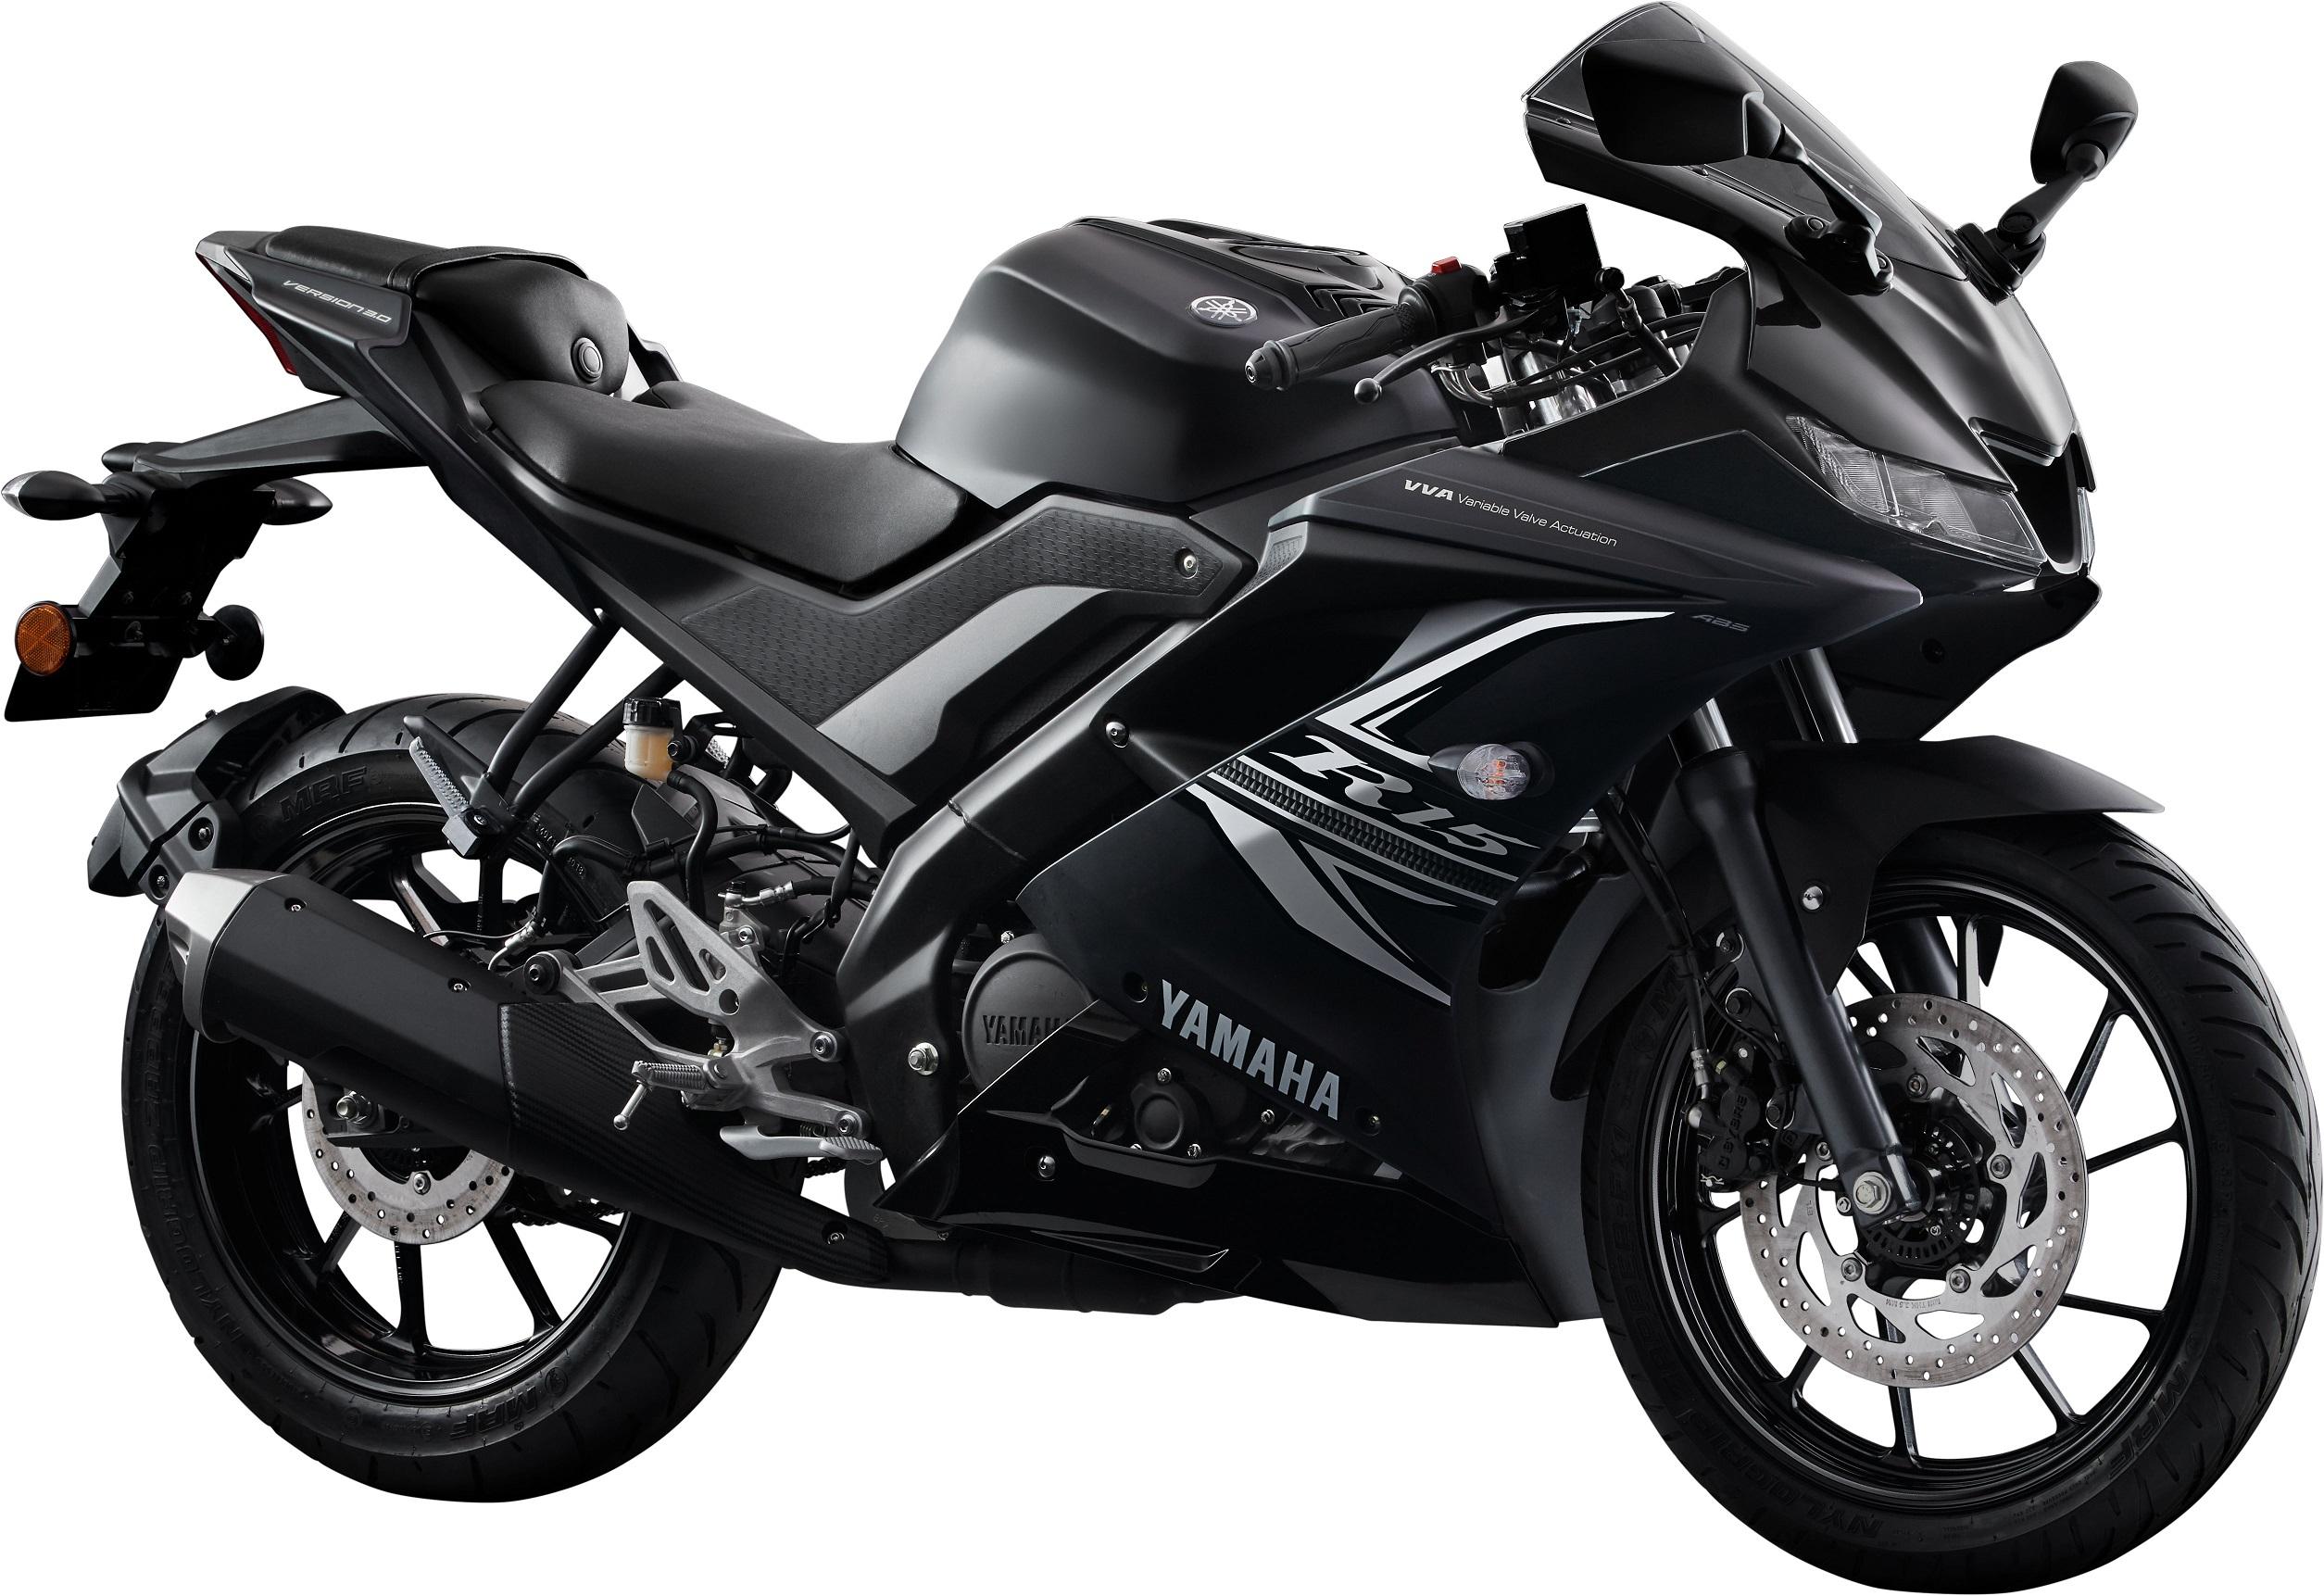 R15 V3 Images Black / Yamaha R15 V3 Abs Price In ...